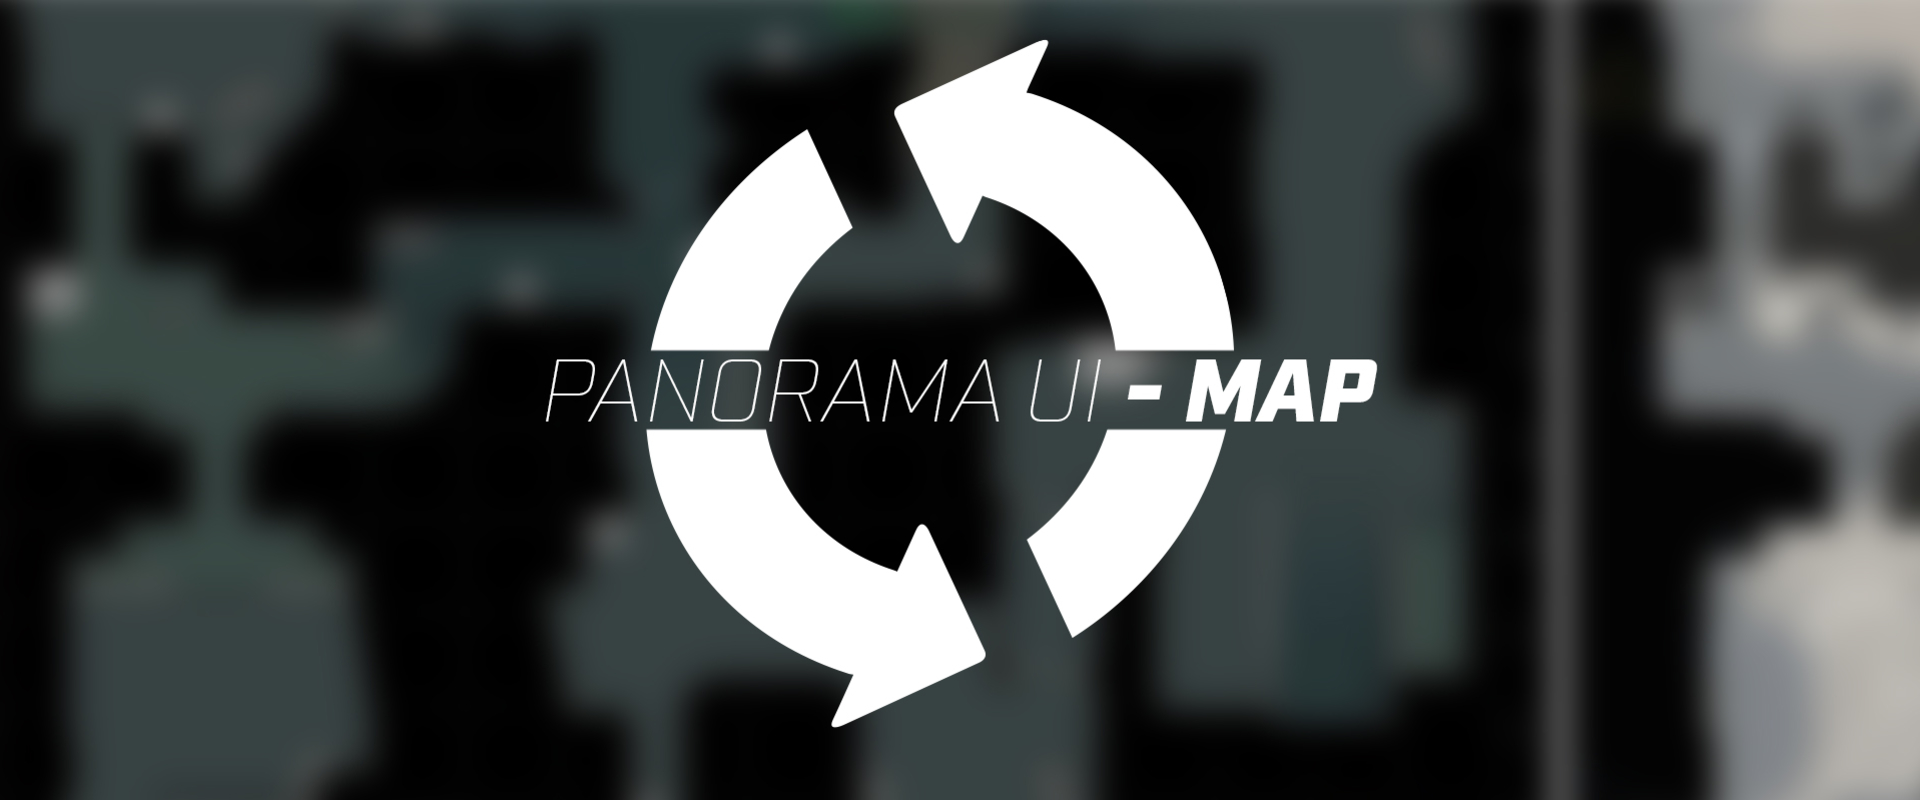 Új radarképeket kaptunk a Panorama UI-hoz!